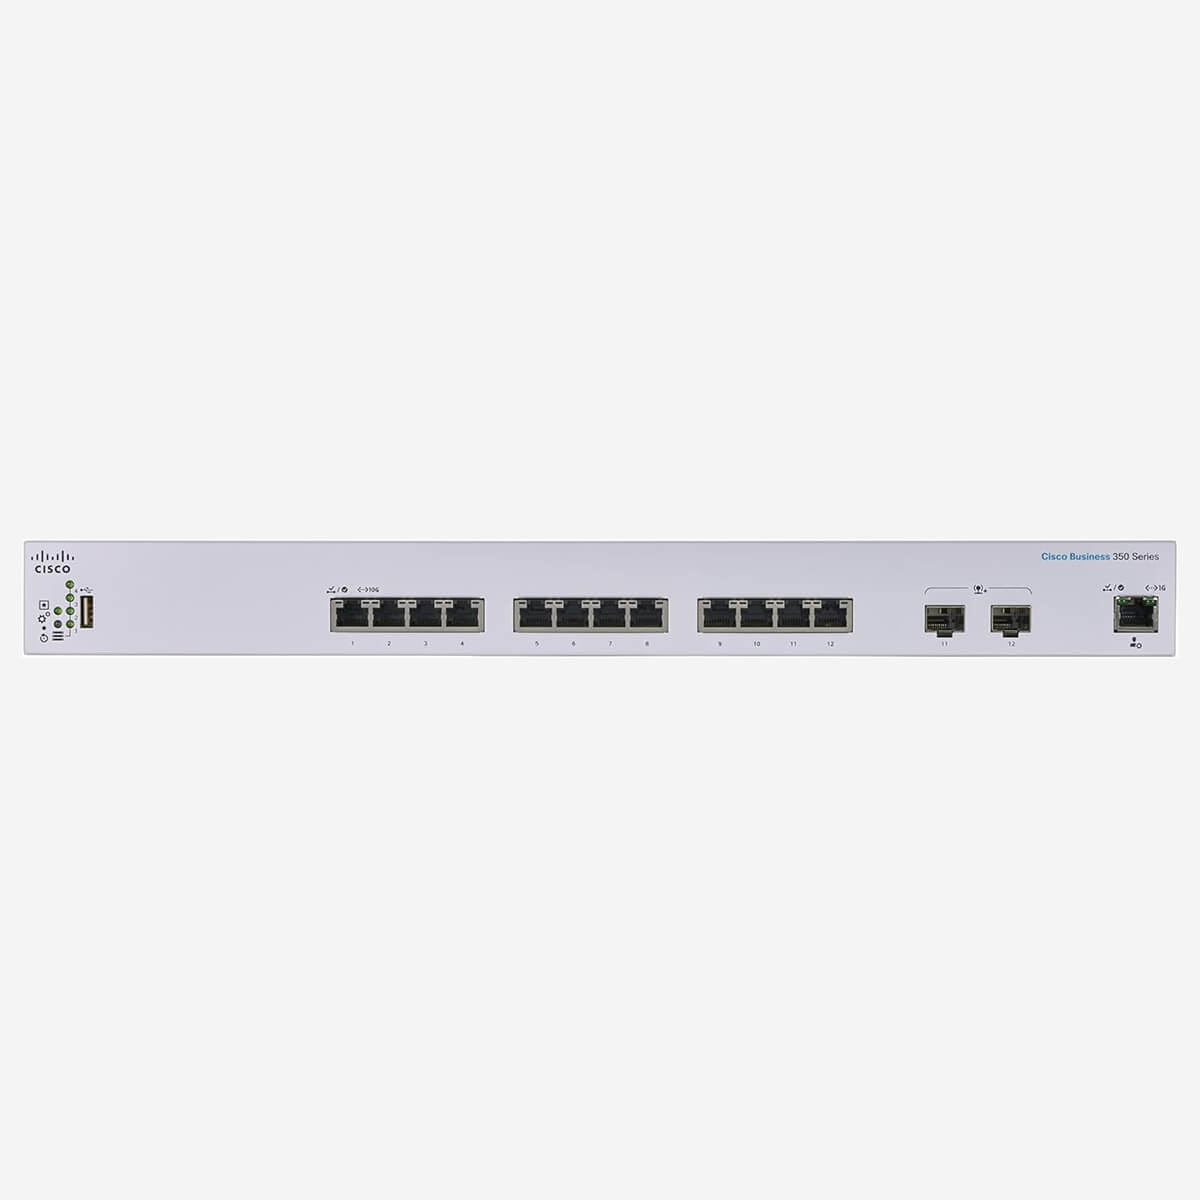 switch Cisco CBS350-12XT-EU